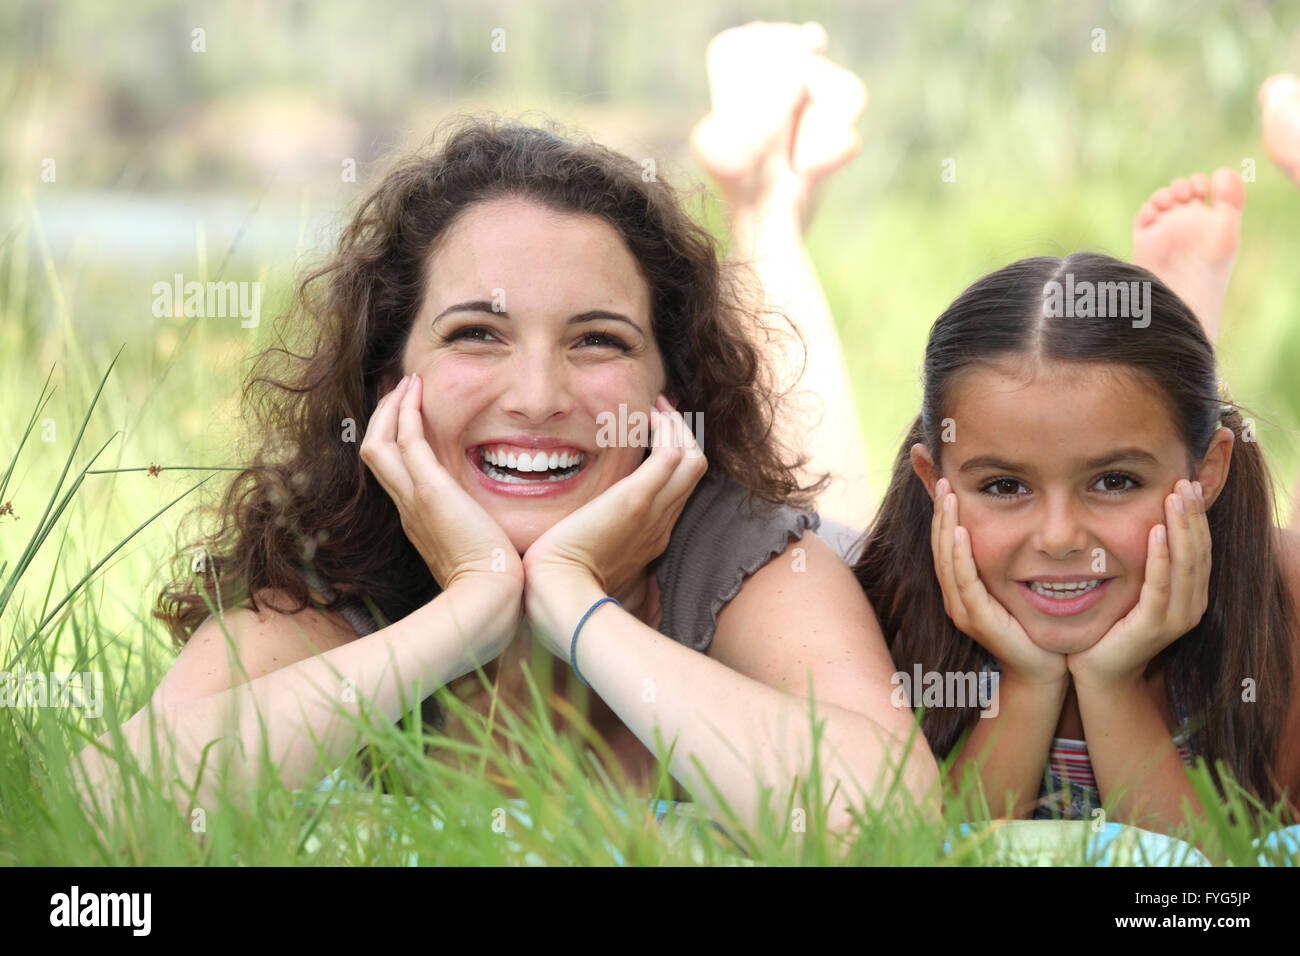 eine Frau und ein kleines Mädchen in der Wiese liegend Stockfoto